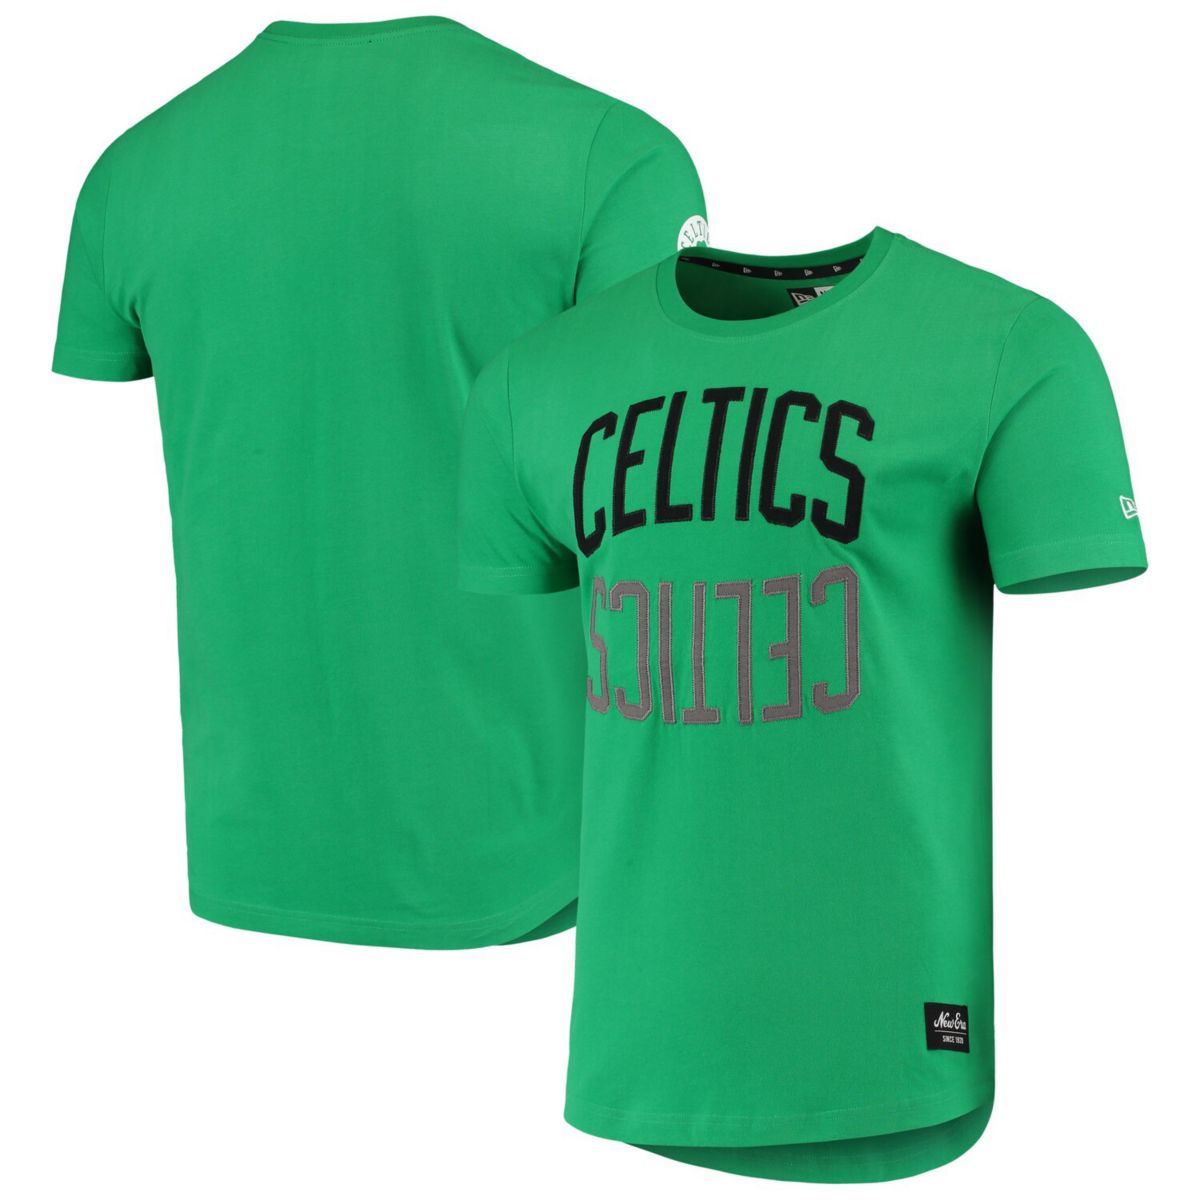 Мужская футболка New Era Kelly Green Boston Celtics из матового трикотажа с аппликацией и логотипом с отражением New Era